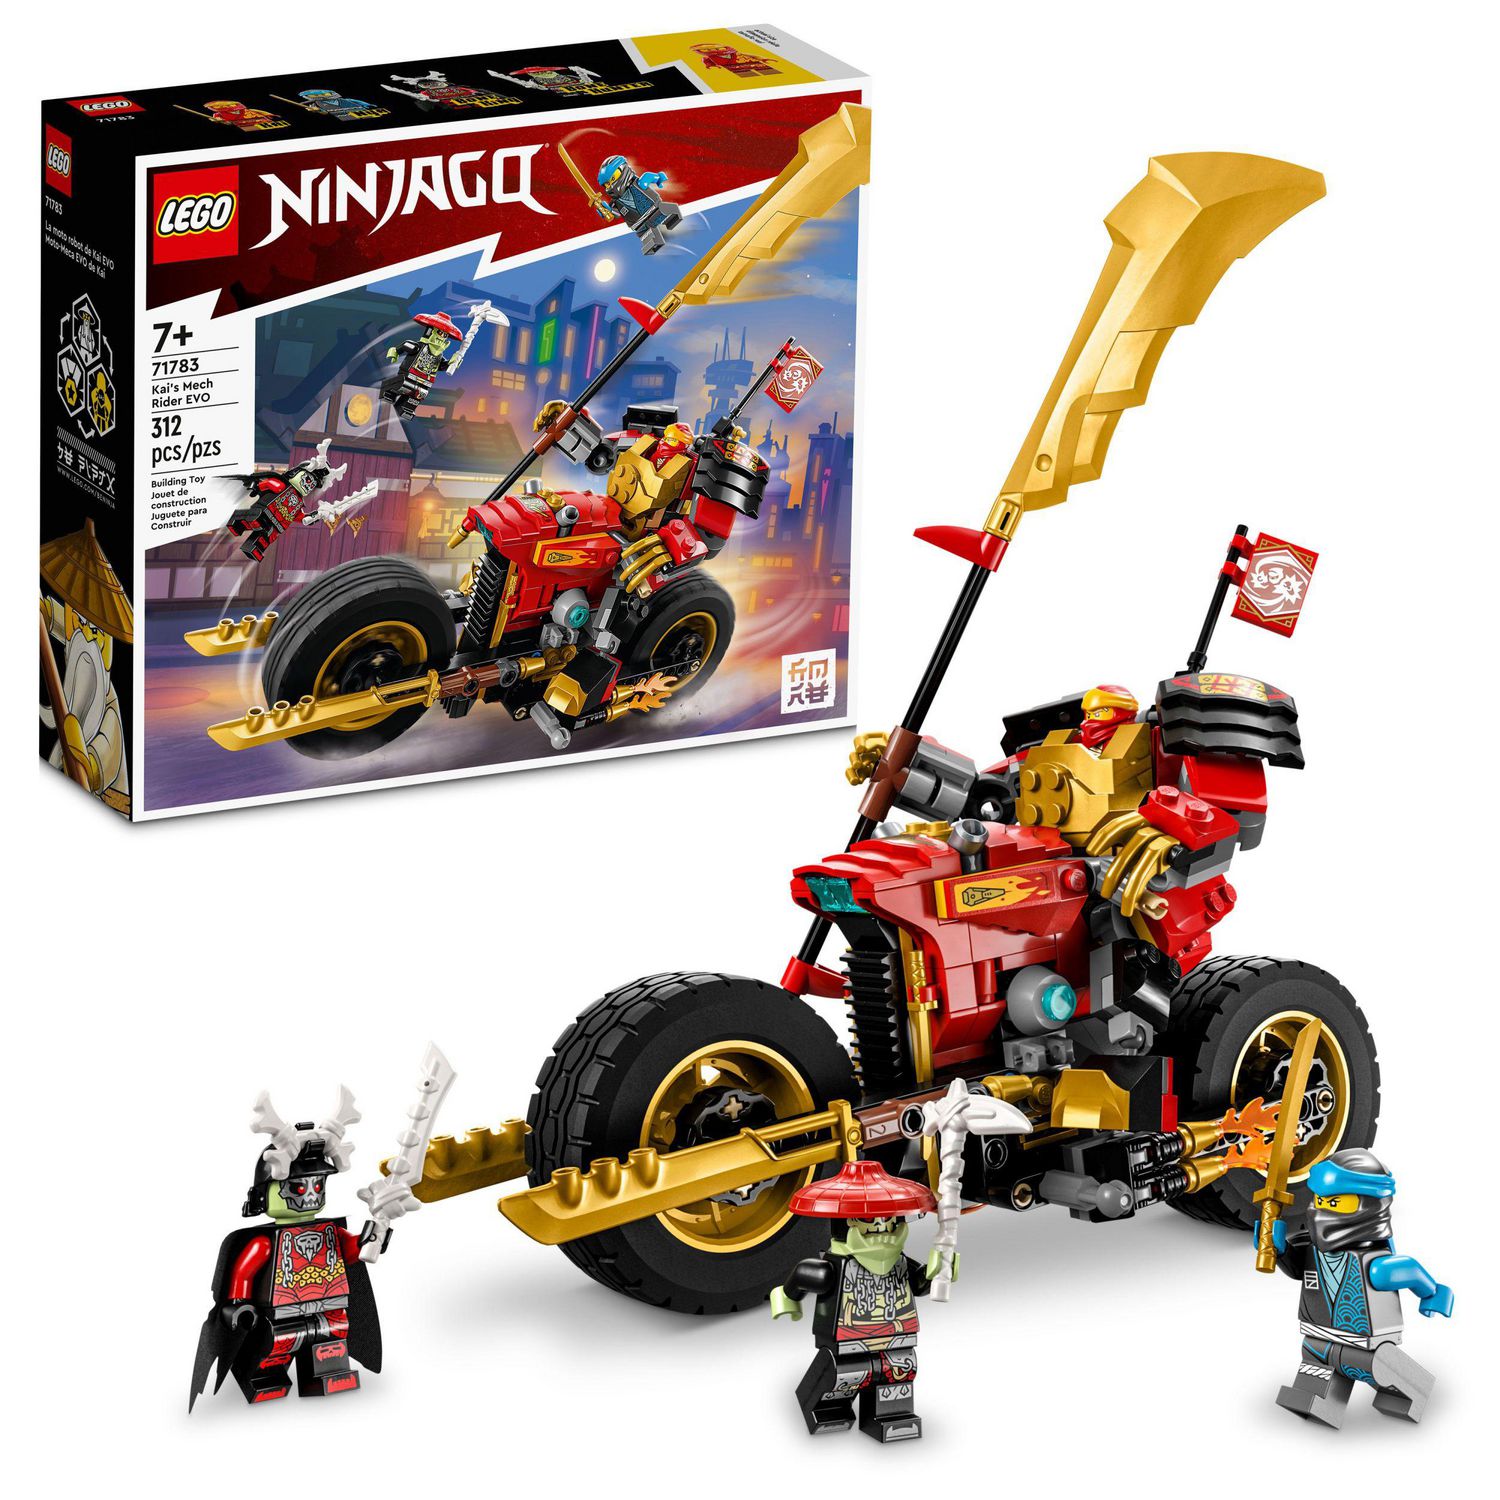 LEGO Ninjago Le Robot Samouraï X de NYA 71775 /Construction Garçon